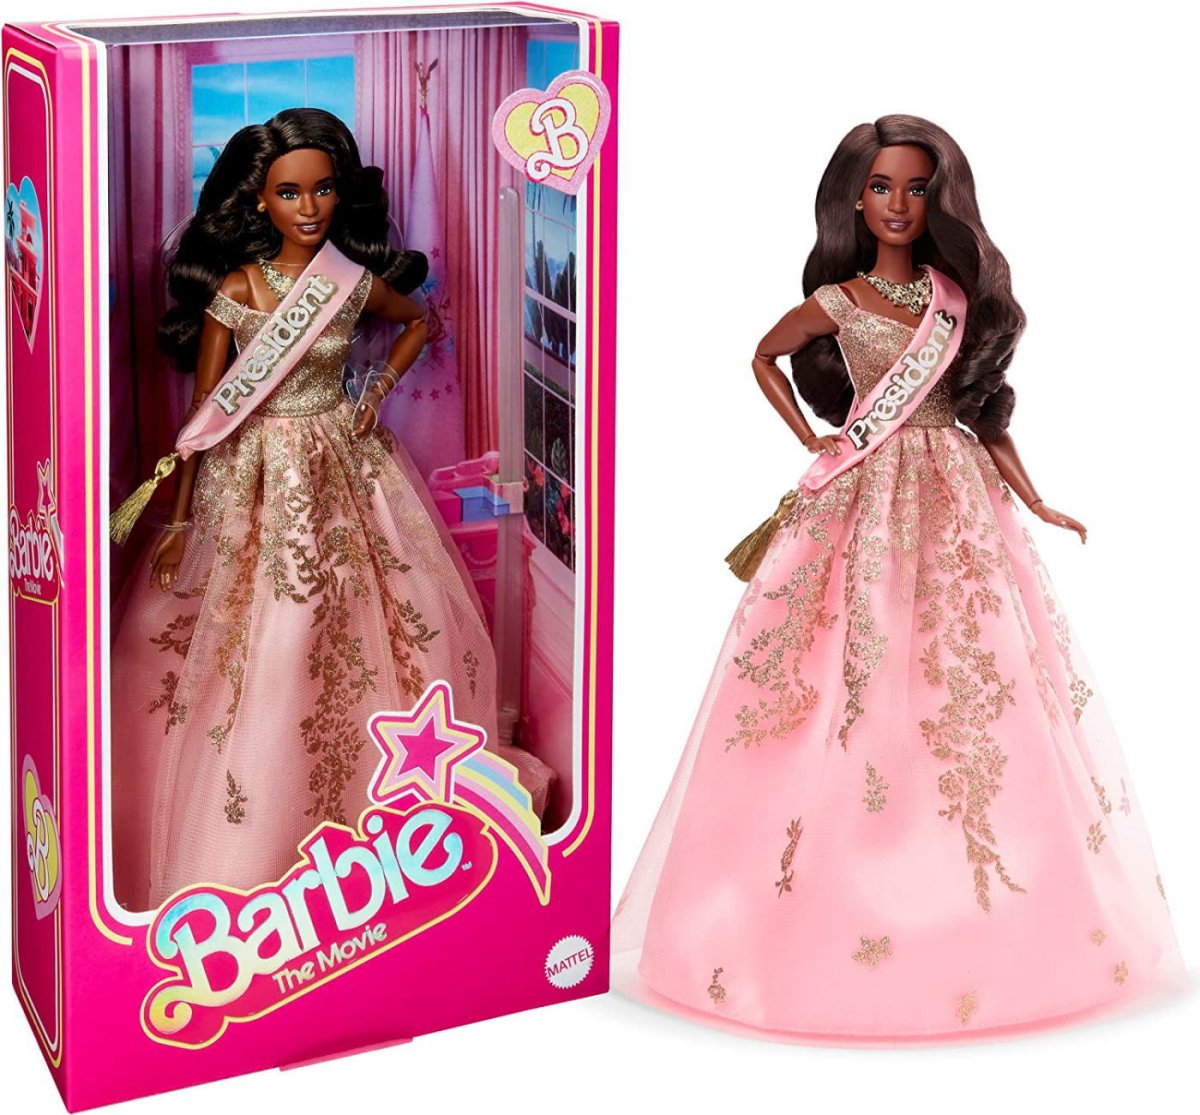 映画「バービー」 プレジデント 黒人ドール Barbie The Movie Doll